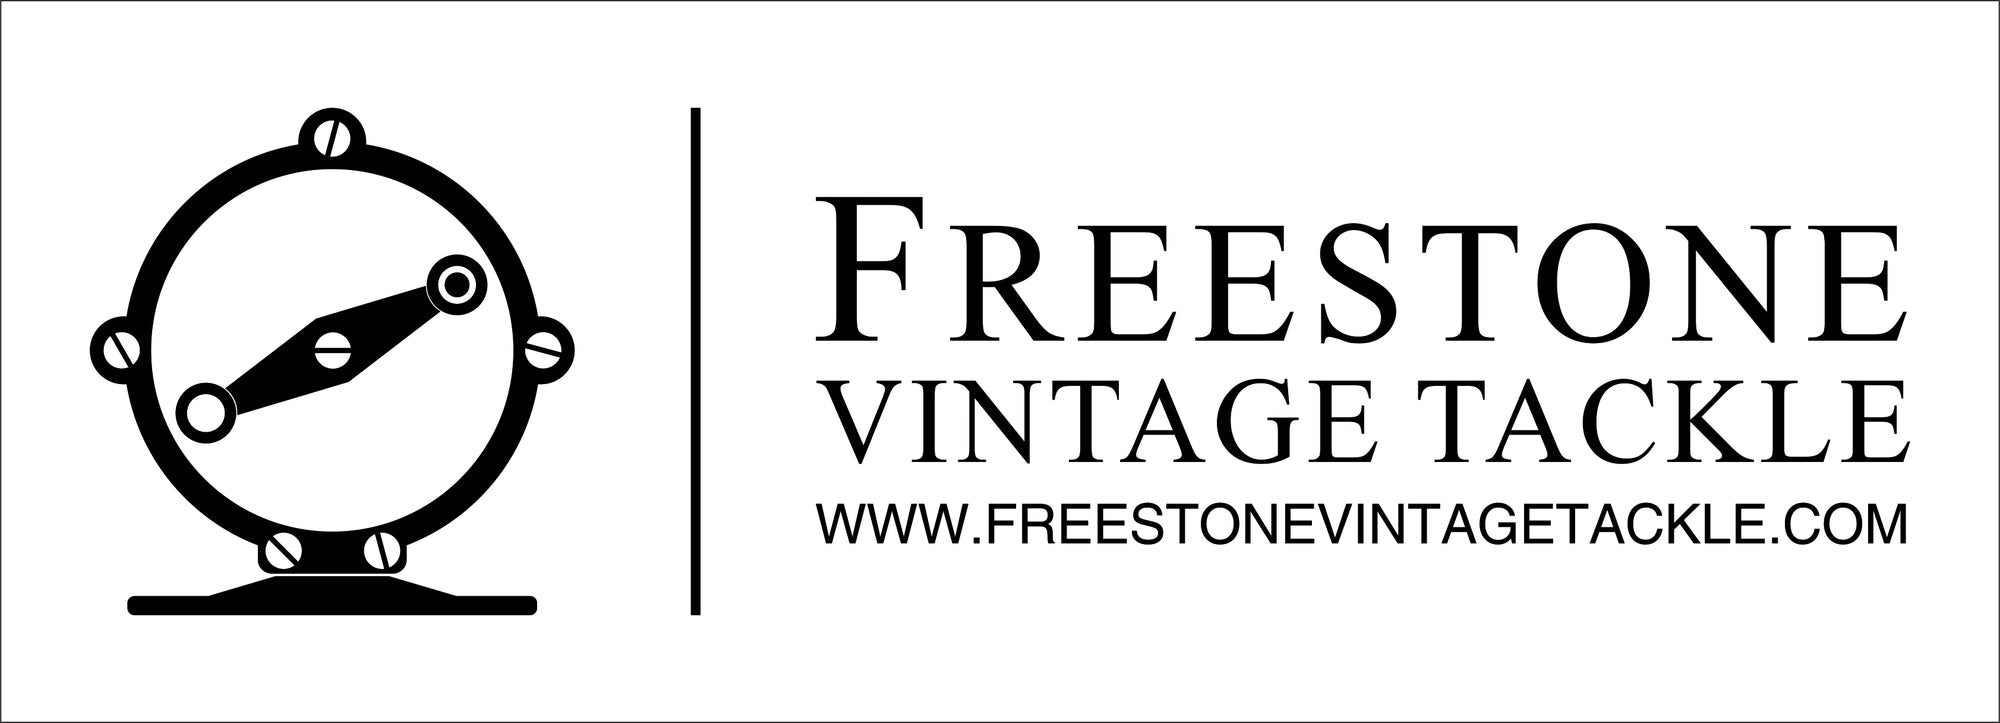 Fenwick - World Class 2 Fly Reel - Freestone Vintage Tackle